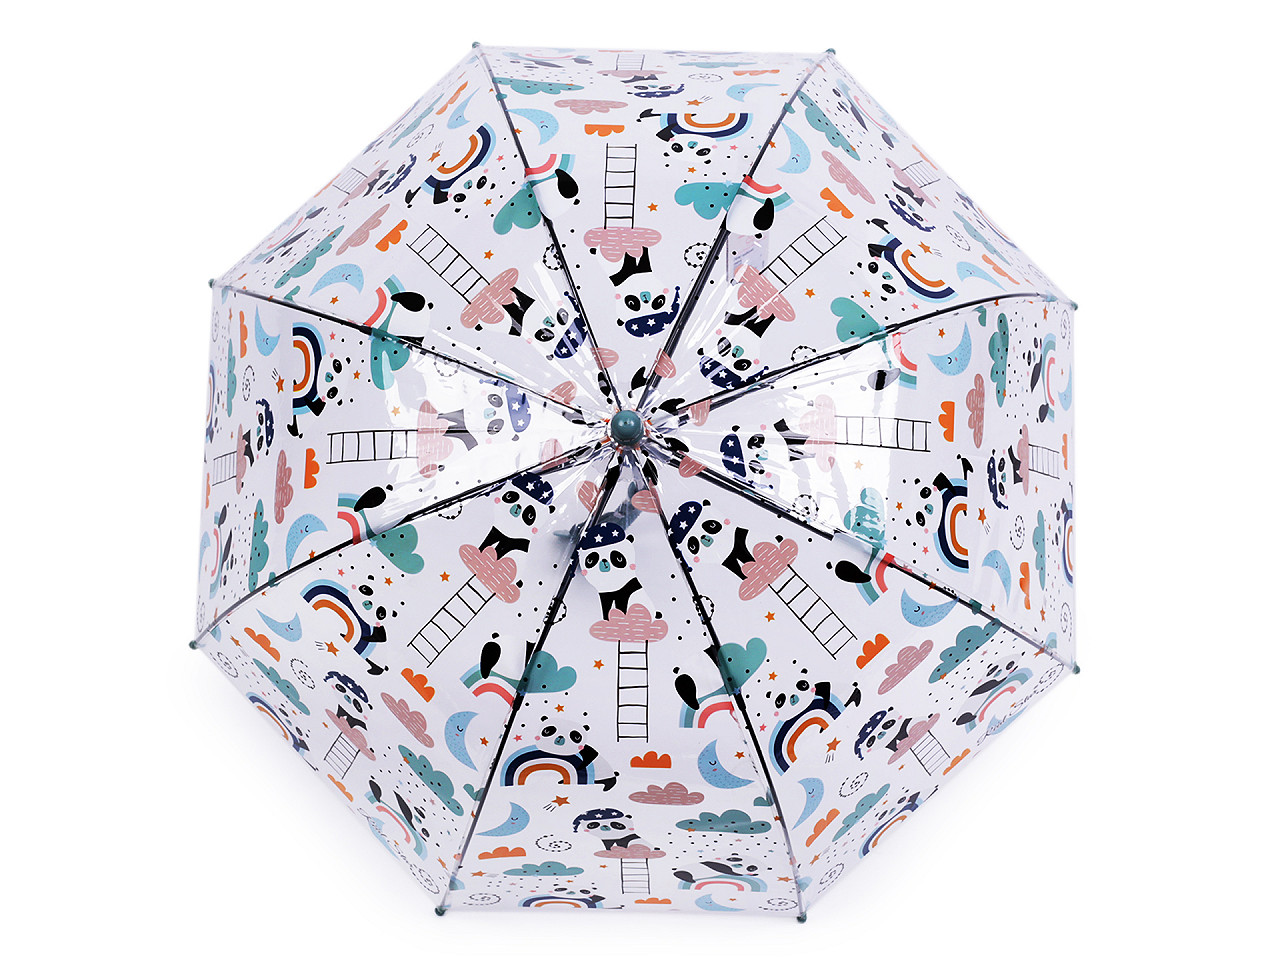 Kinder-Durchsichtiger-Regenschirm, grau-grün, 1 Stk